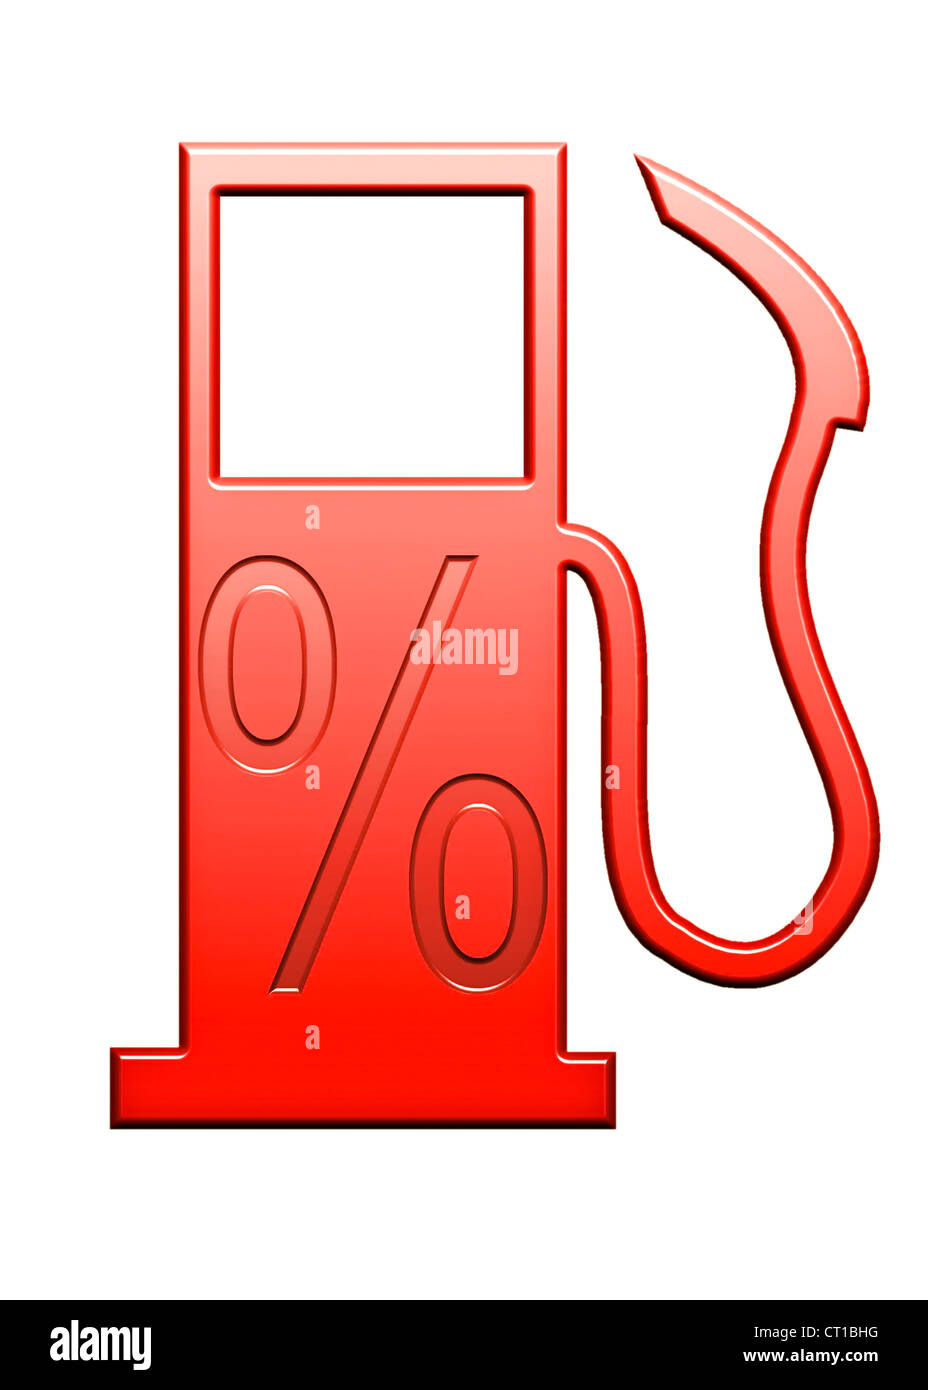 Segno di percentuale su un simbolico della pompa a gas Foto Stock